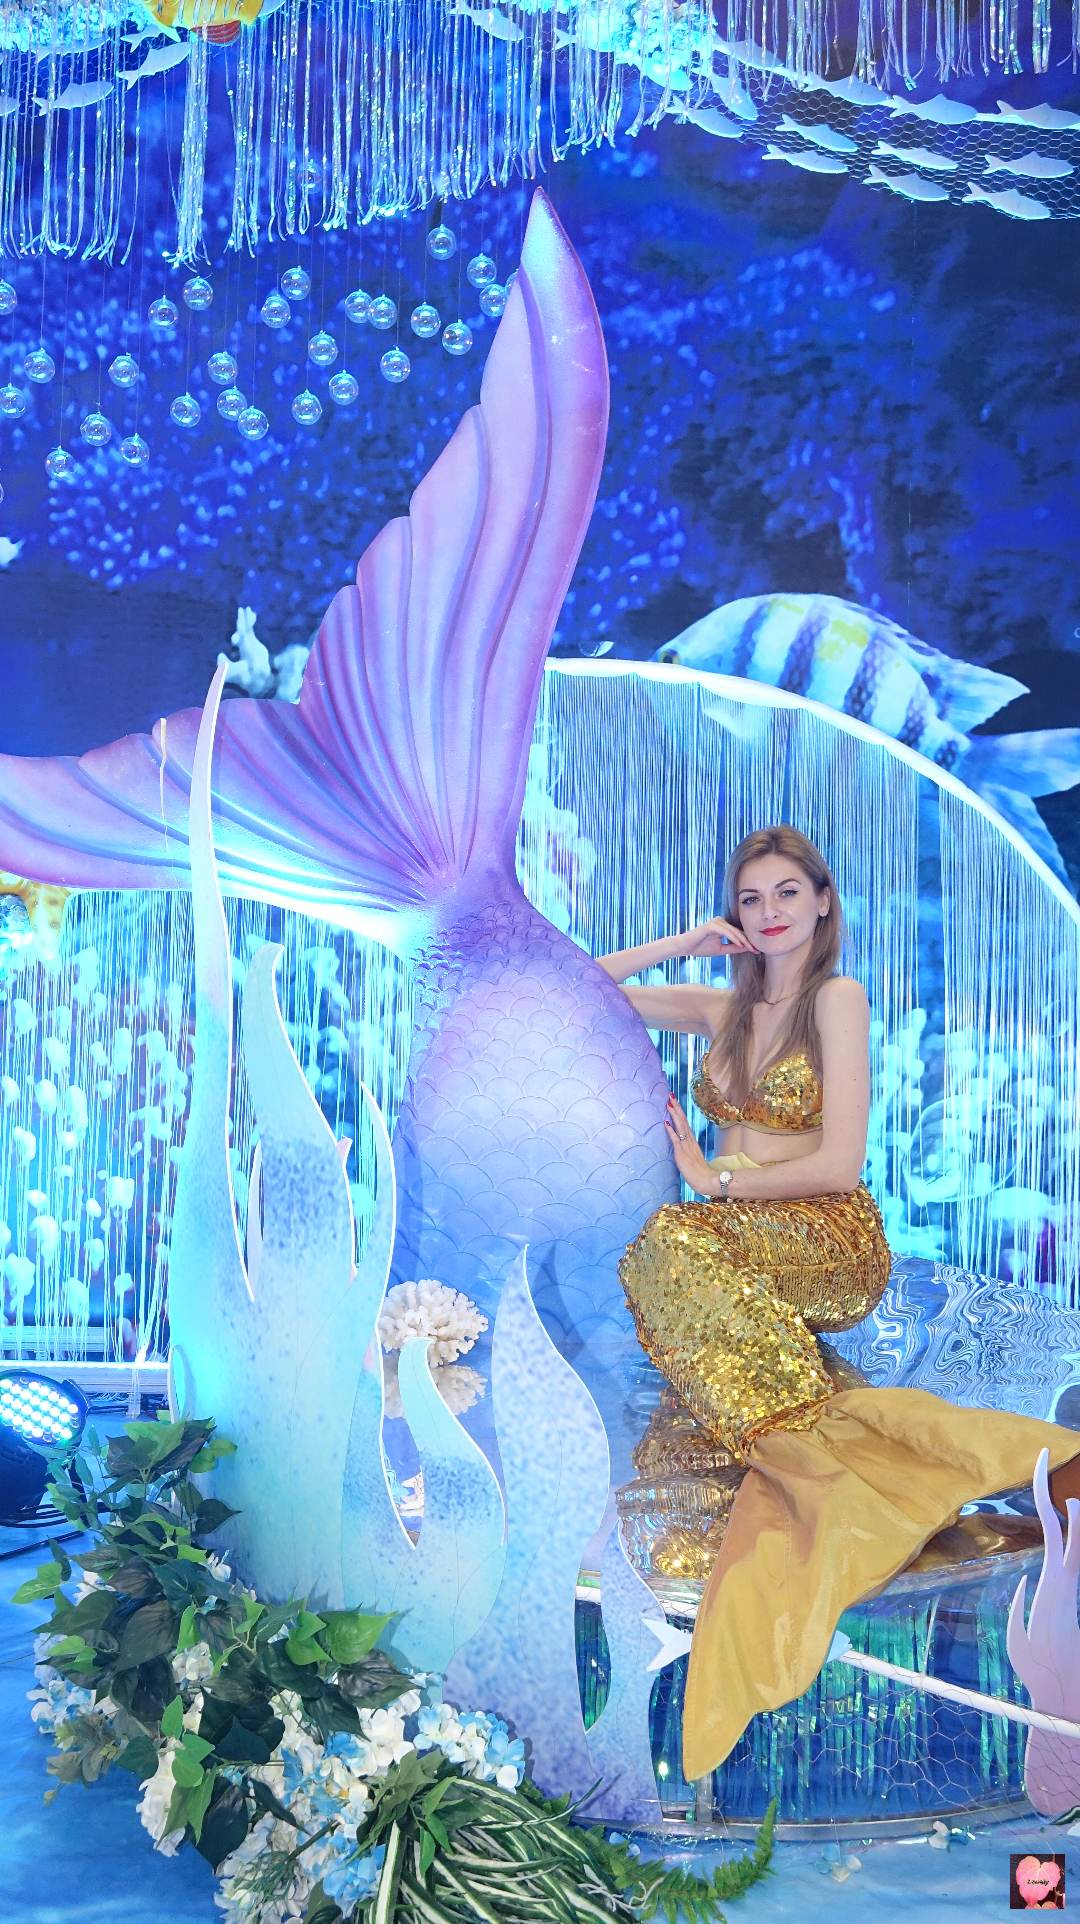 20170224 可愛美人魚 lovely mermaid @ 中海凱驪酒店 @ 深圳婚博會 @ 深圳會展中心